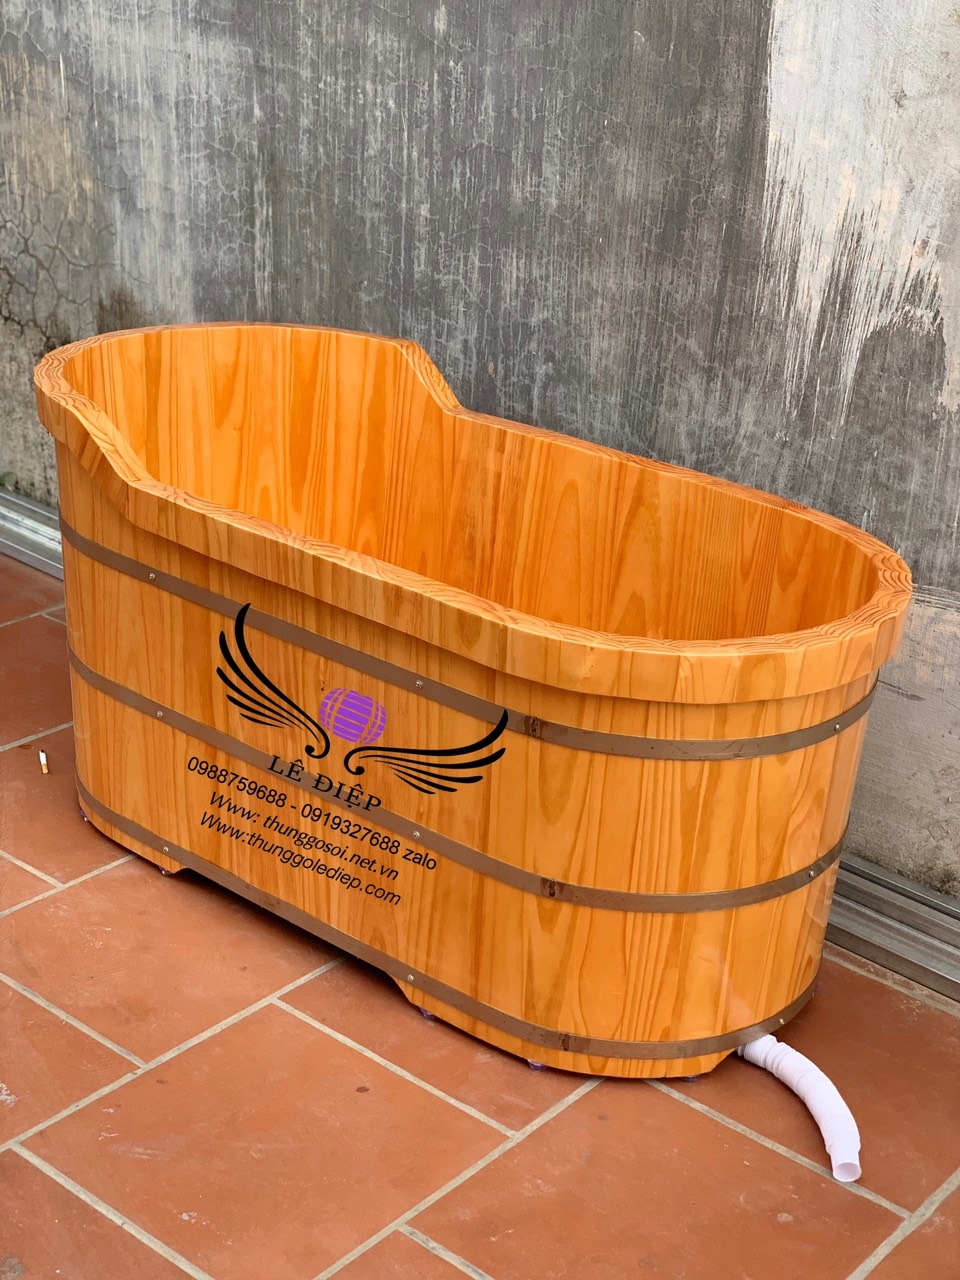 bồn tắm bằng gỗ thông